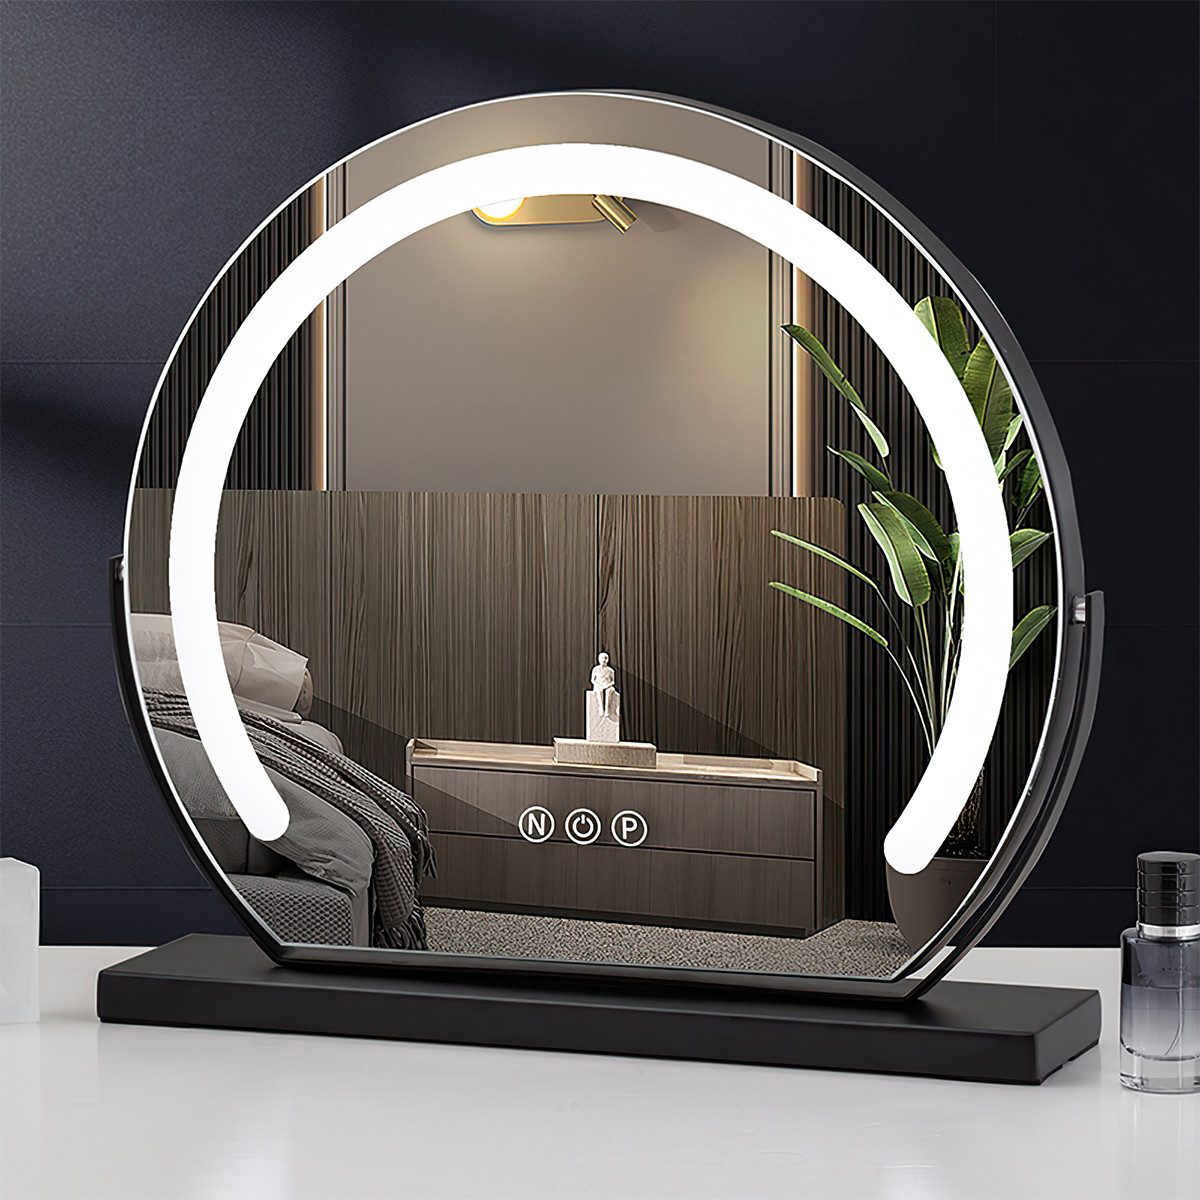 DOPWii Kosmetikspiegel LED-Lichtspiegel,Kosmetikspiegel,3 Lichtfarben Dimmbar,Touch-Steuerung